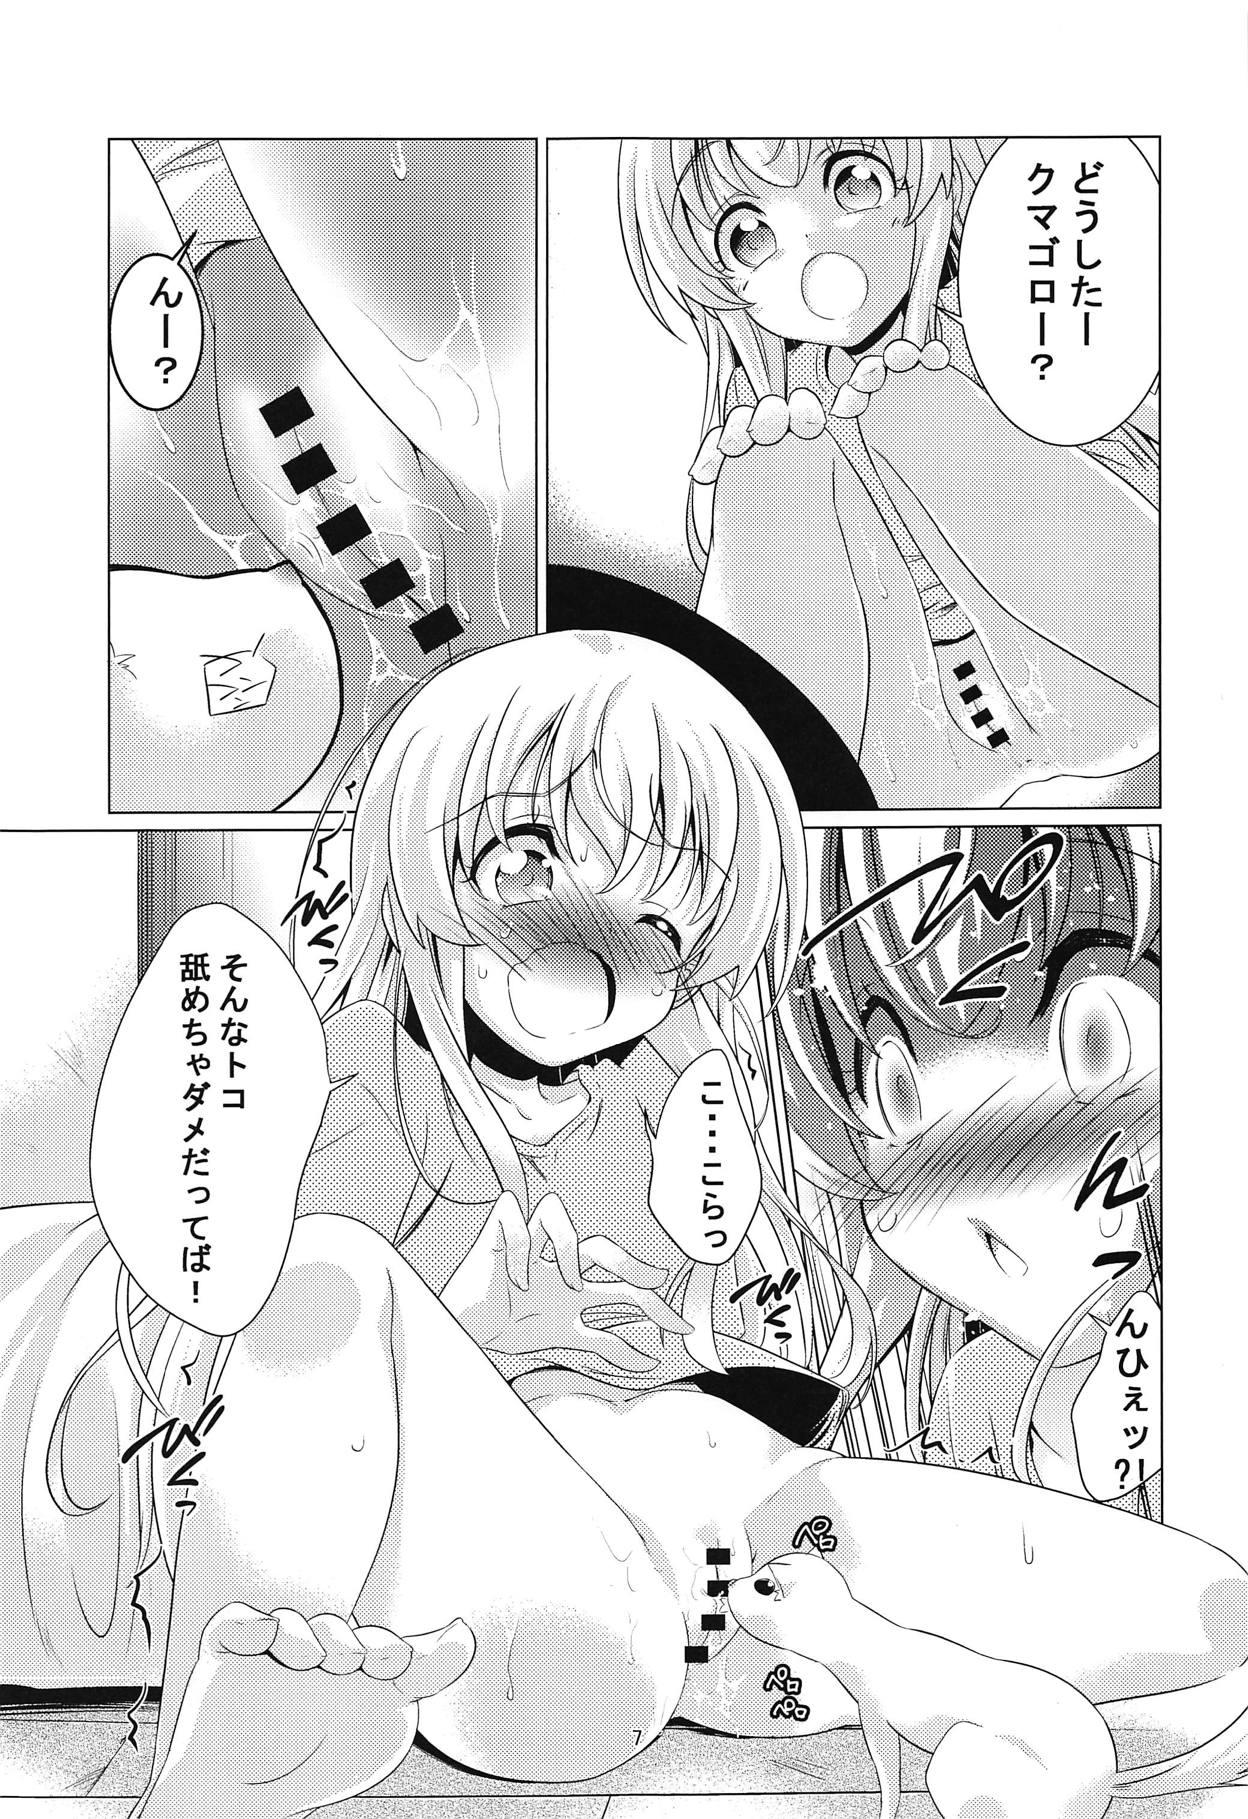 Mature Uchi no Pet ga Namesugiru! - Uchi no maid ga uzasugiru Freak - Page 6